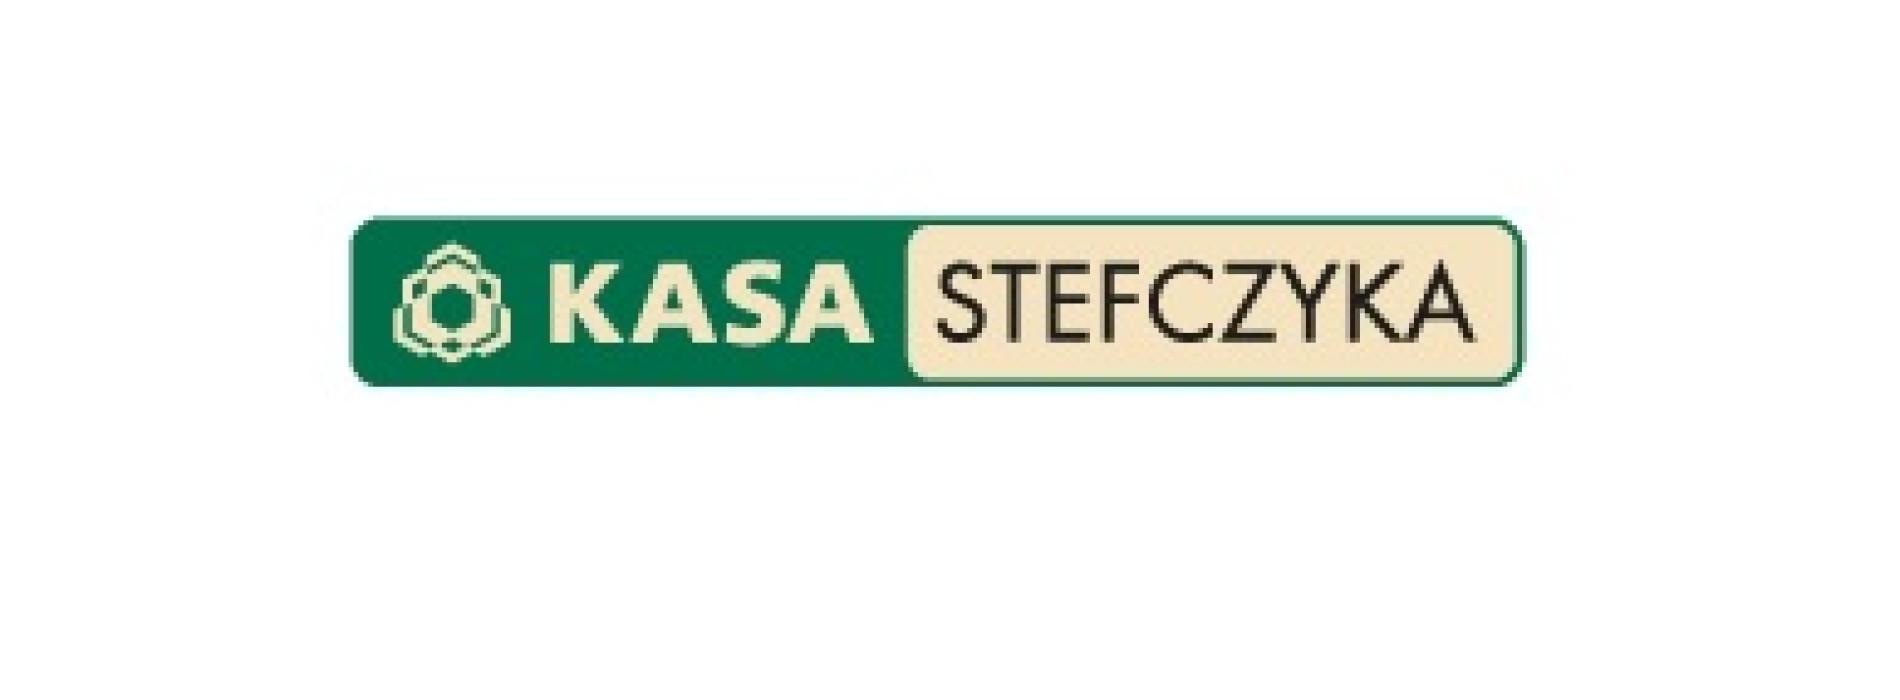 Zysk Kasy Stefczyka przekracza 15 milionów